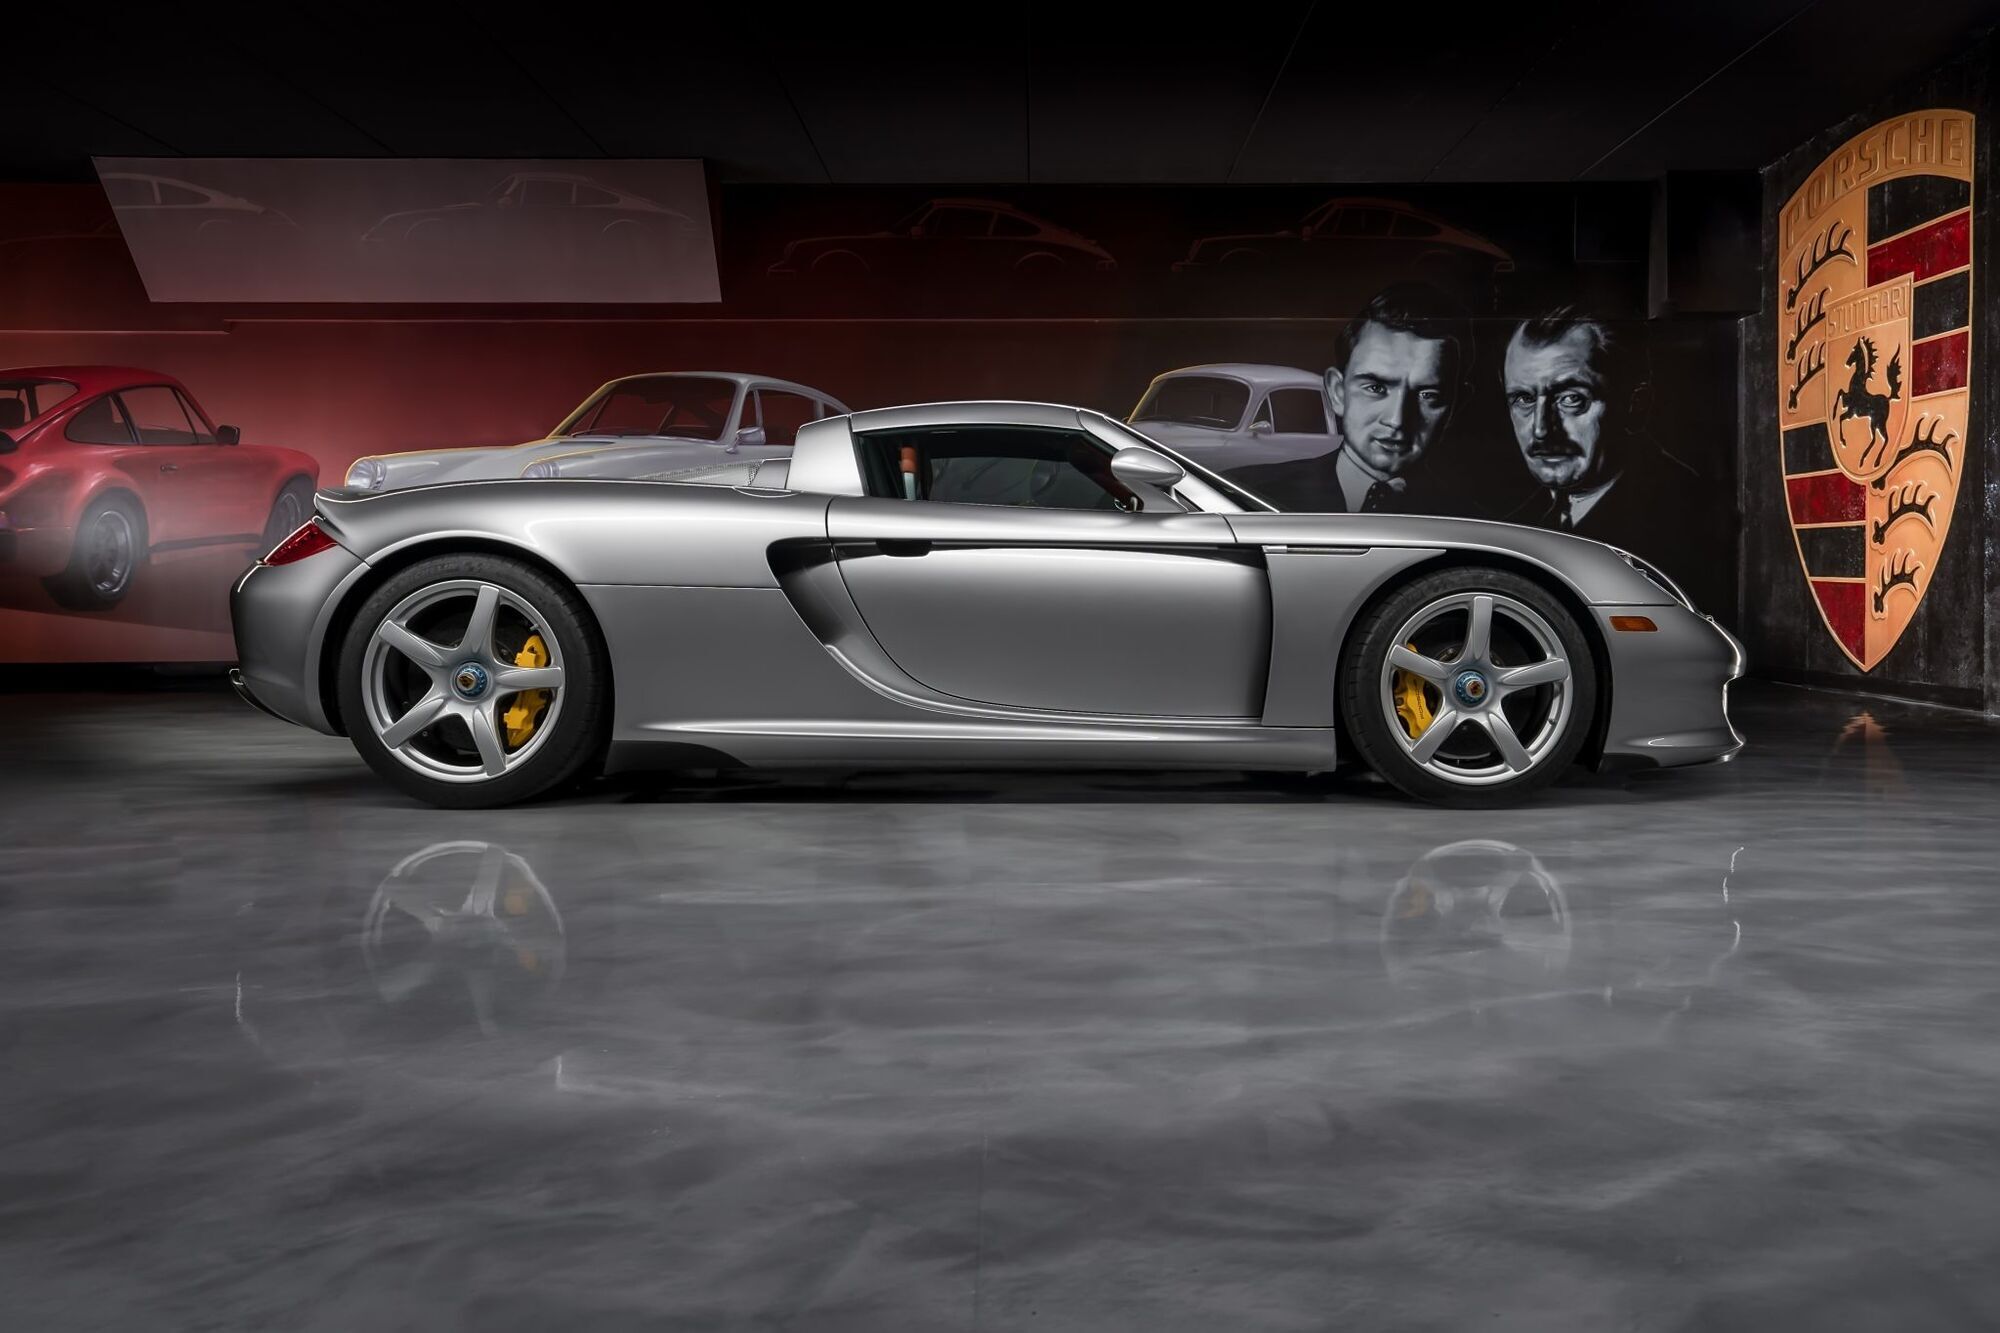 Максимальная скорость Porsche Carrera GT достигала 330 км/ч